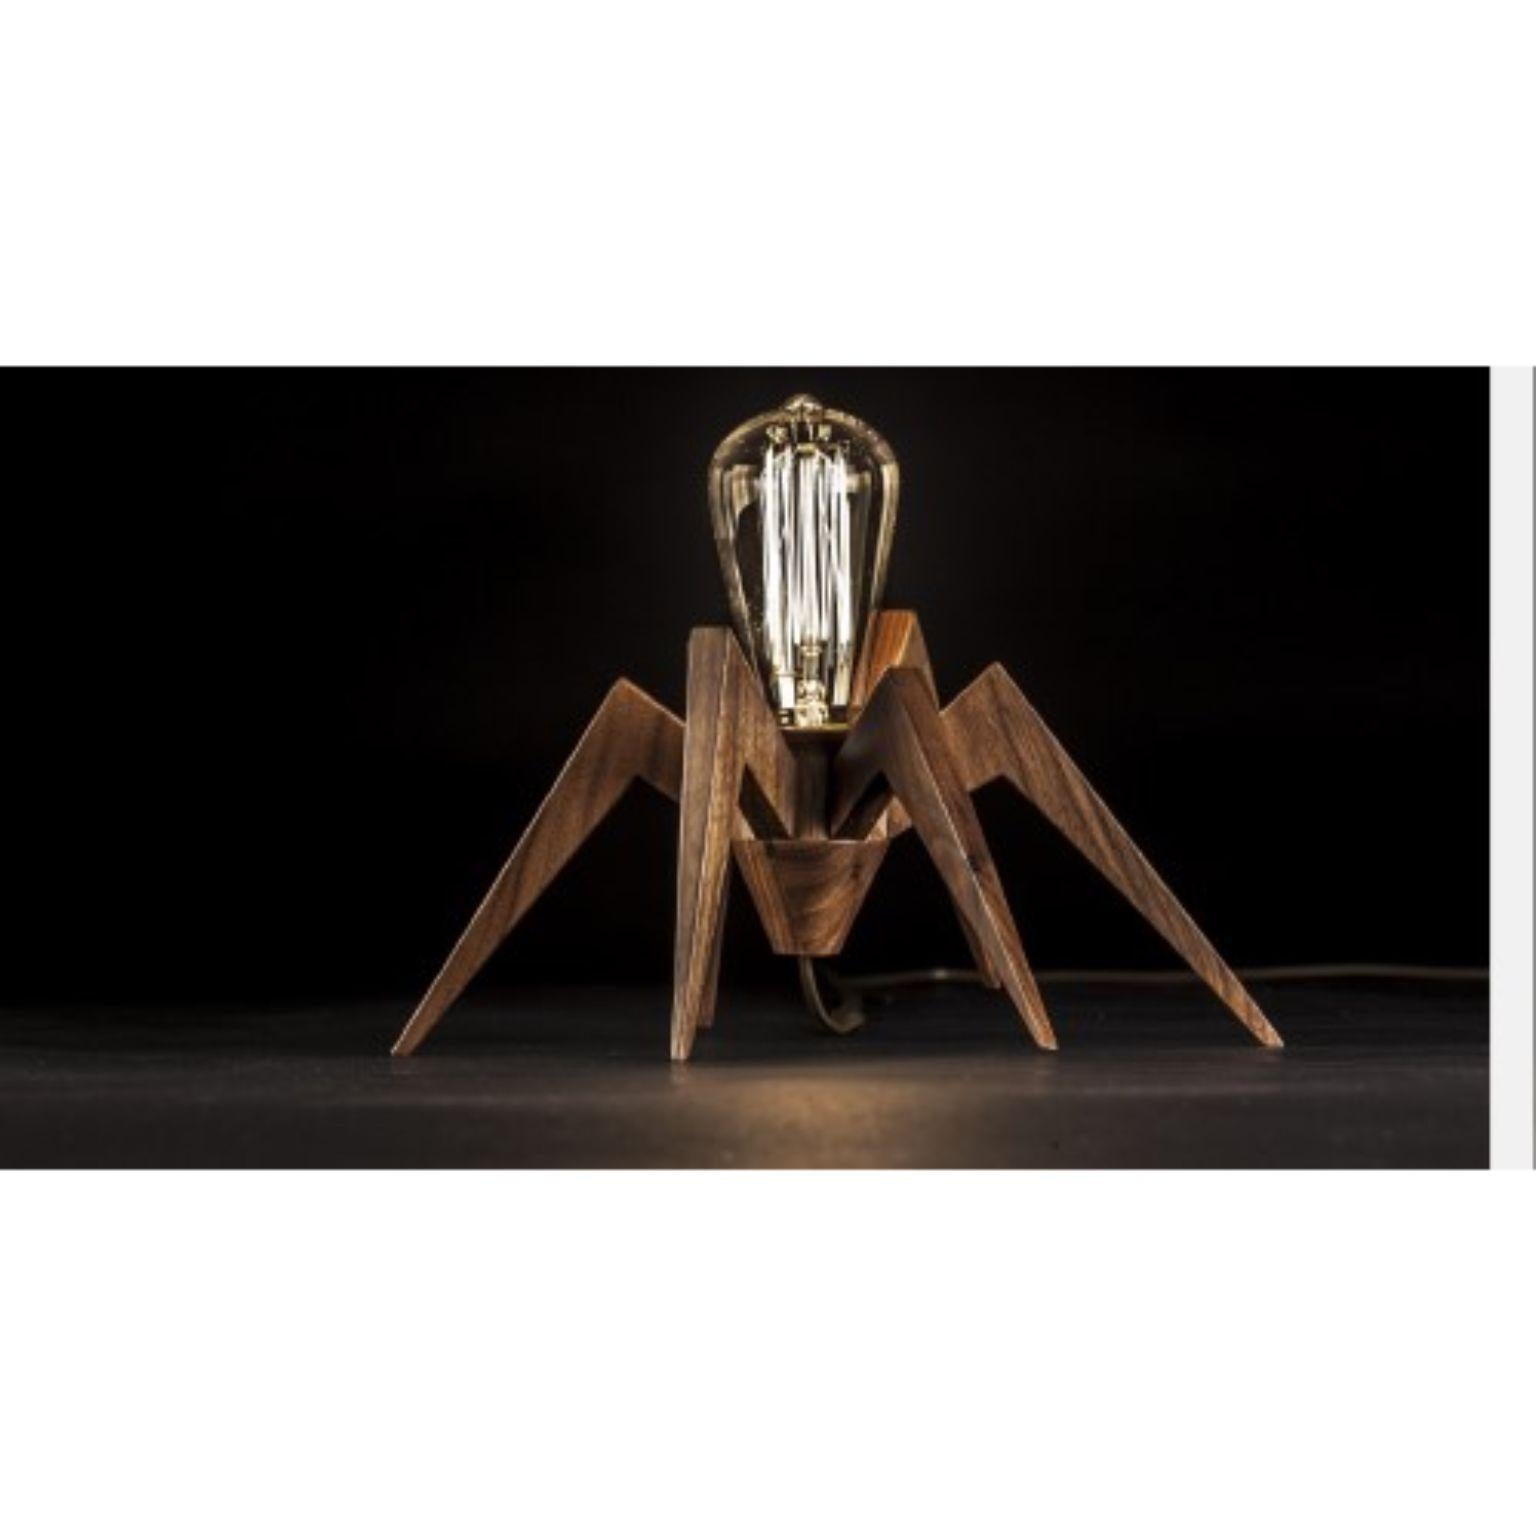 Lampe araignée d'Alexandre Caldas
Dimensions : L 30 x D 23 x H 14 cm
MATERIAL : Bois de noyer massif

MATERIAL disponible en frêne, hêtre, noyer

La lampe araignée est une lampe décorative en bois massif, avec la capacité d'être utilisée selon la